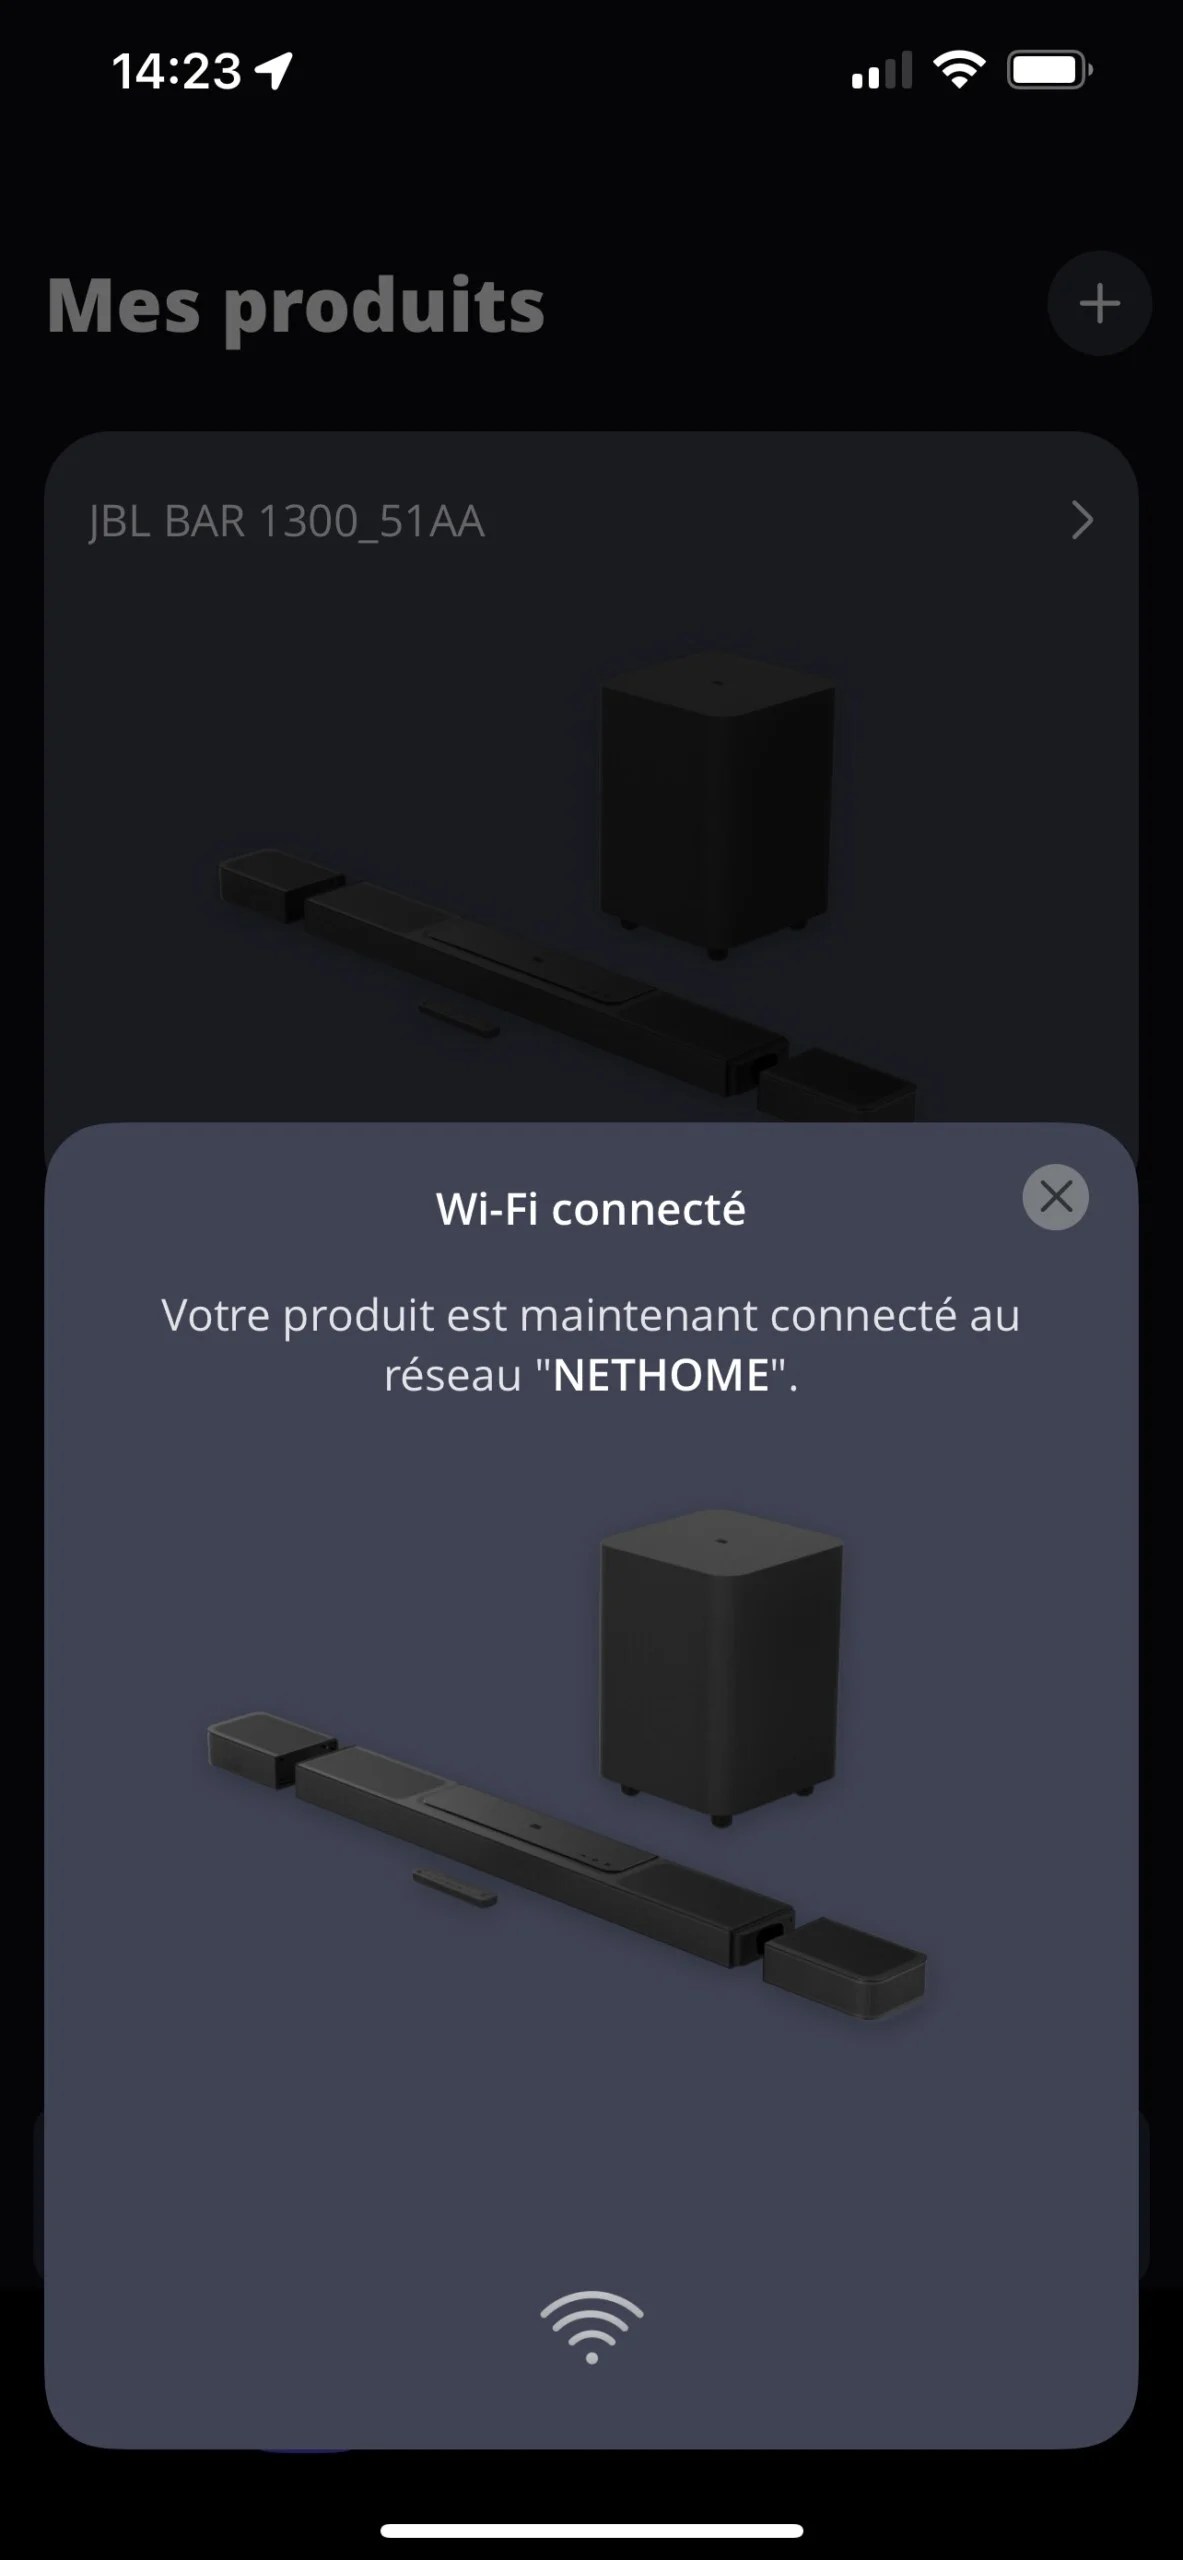 La connexion au réseau WiFi est rapide.